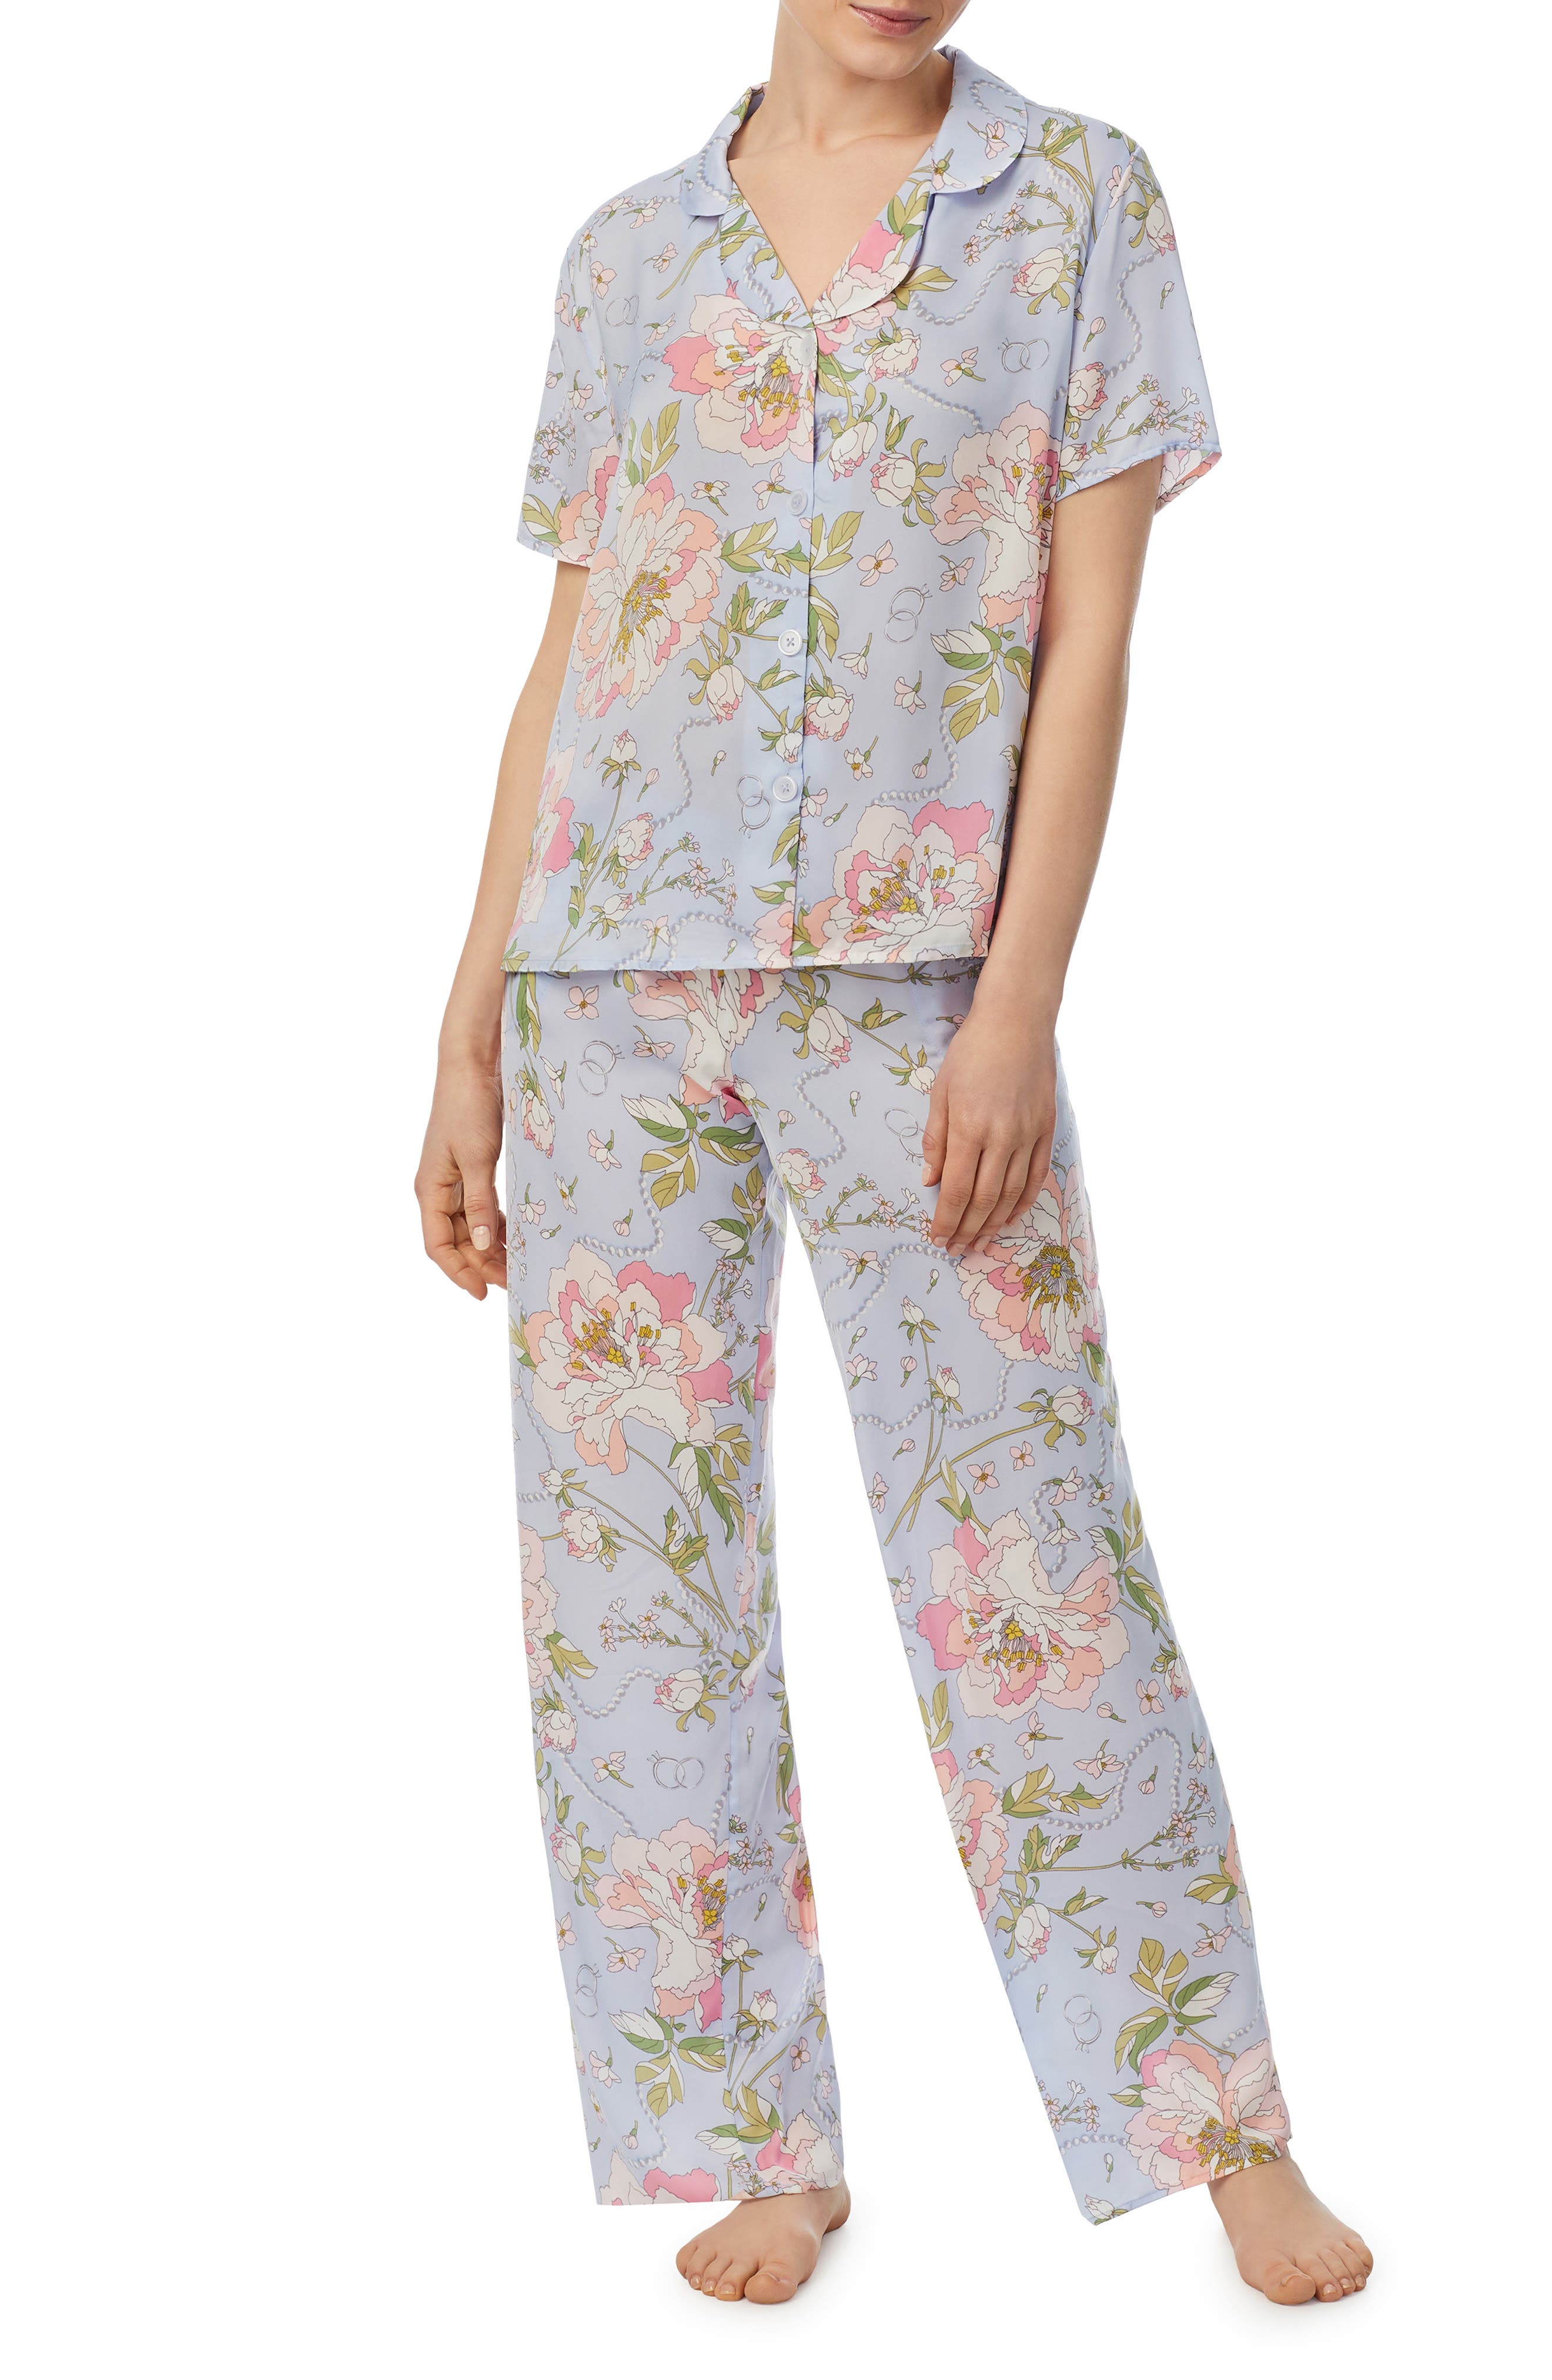 Room Service Pjs Print Pajamas in Blu/Flor